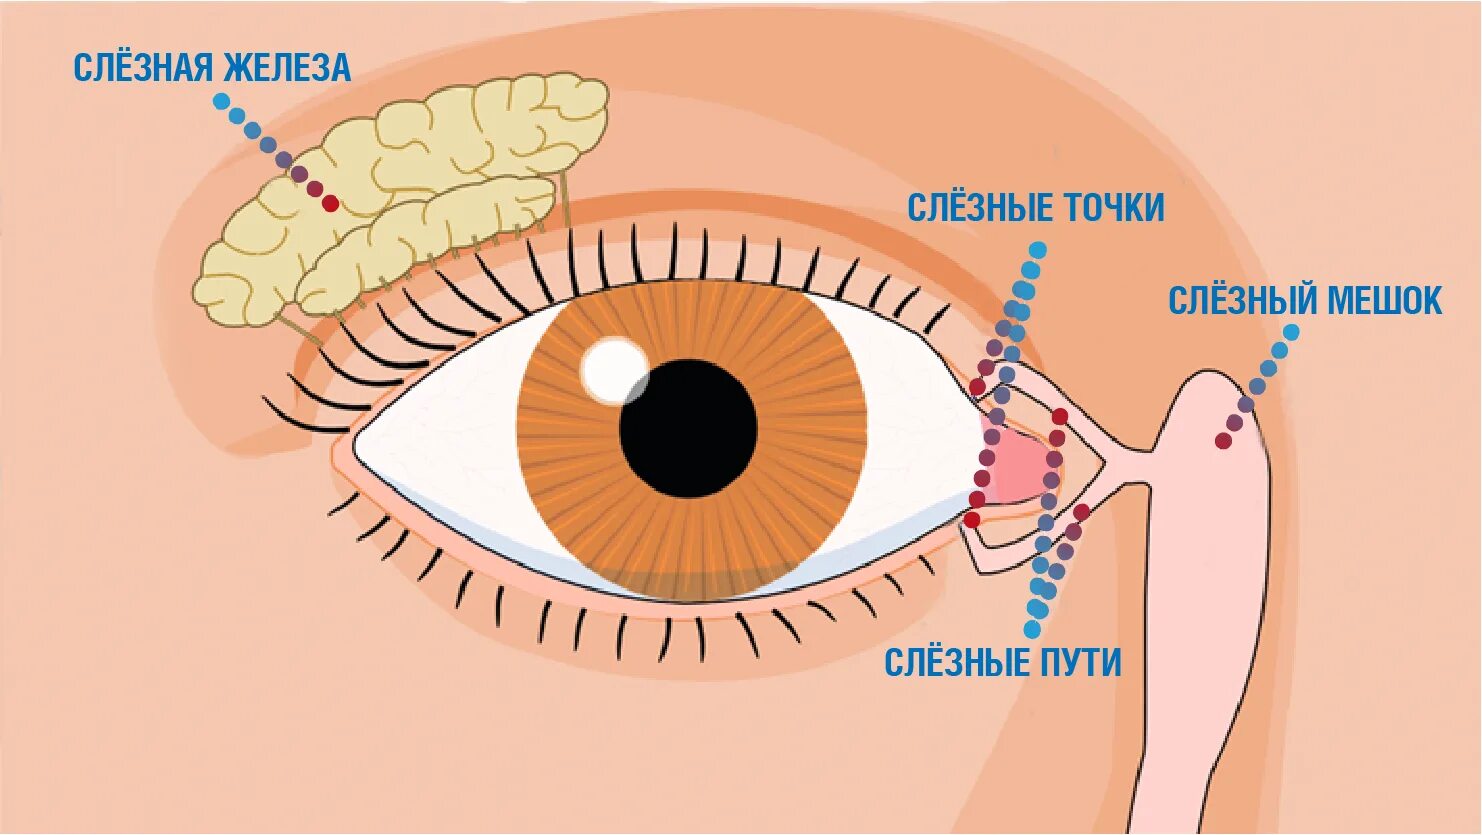 Слезный канал открывается. Зондирование глаза слезного канала. Воспаление слезного мешка (дакриоцистит). Слезная железа и слезный мешок. Слезный канал железа и протоки.